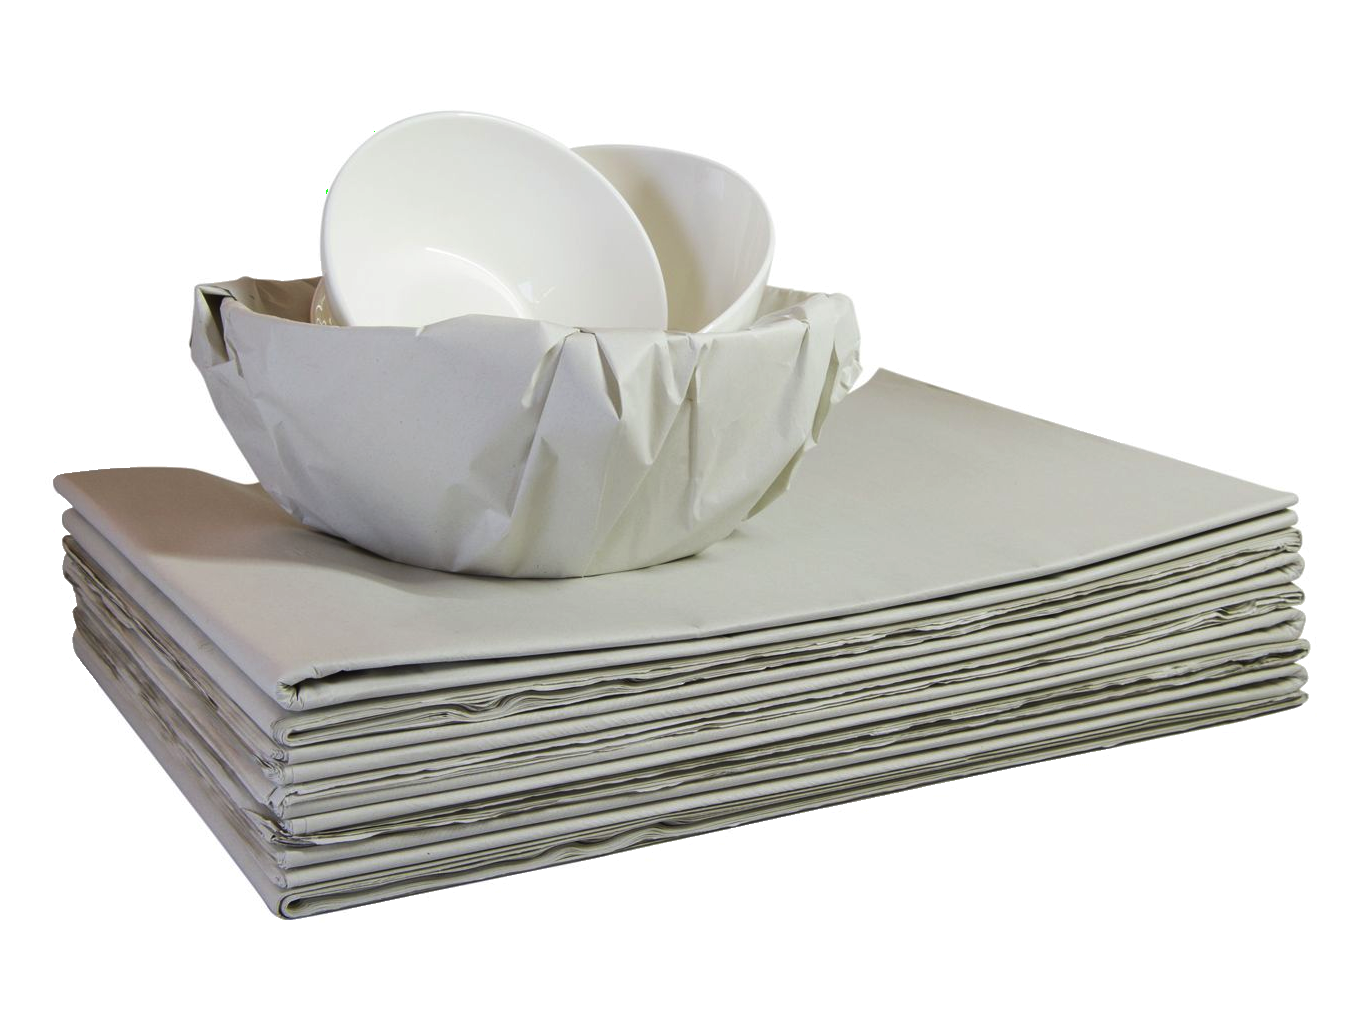 Papel sulfito con tazón envuelto en papel